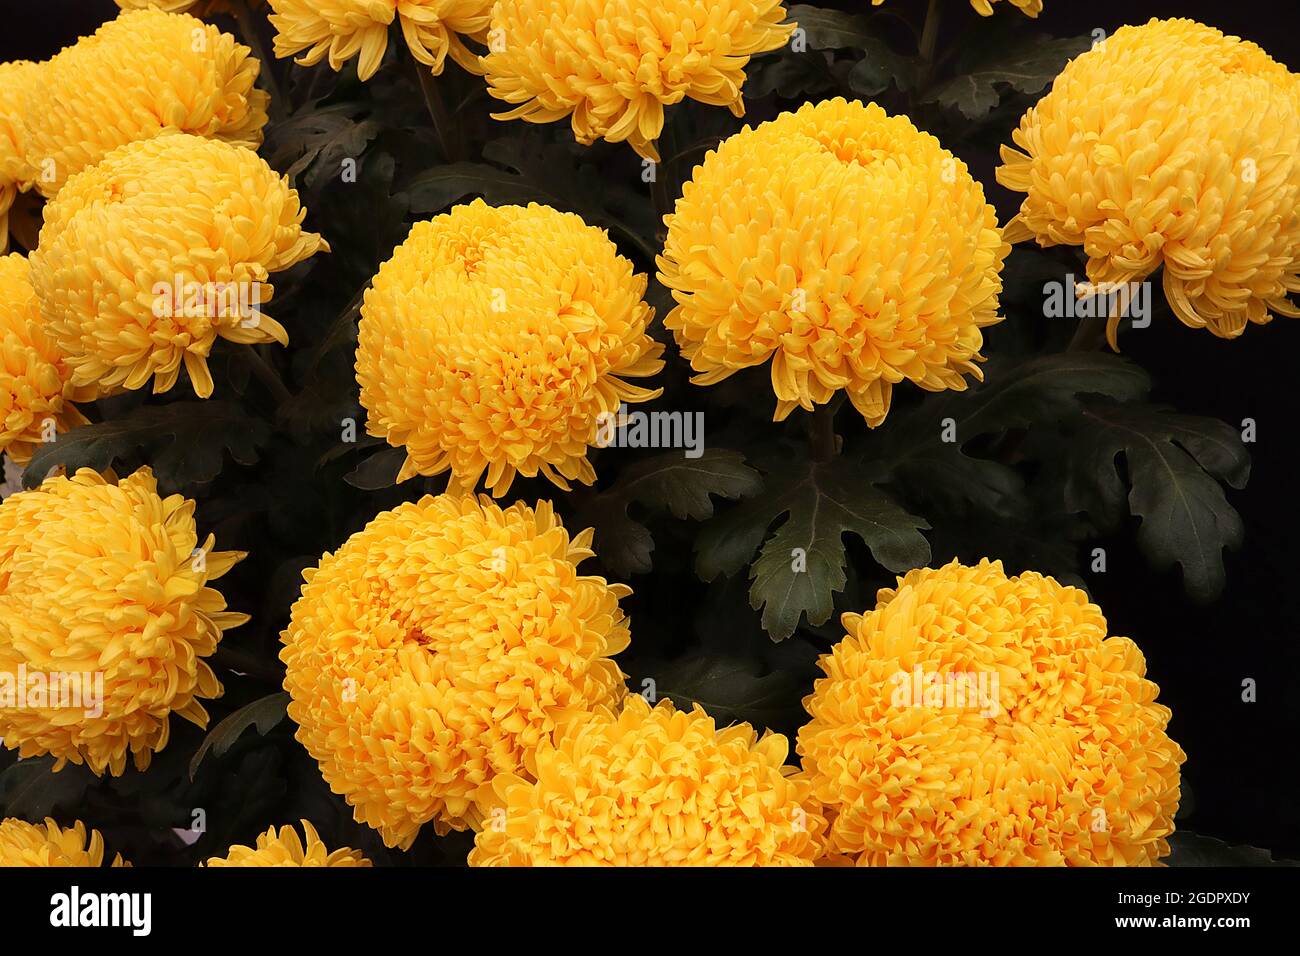 Chrysanthemum ‘Misty Golden’ fiori di colore giallo dorato con petali strettamente impaccati, luglio, Inghilterra, Regno Unito Foto Stock